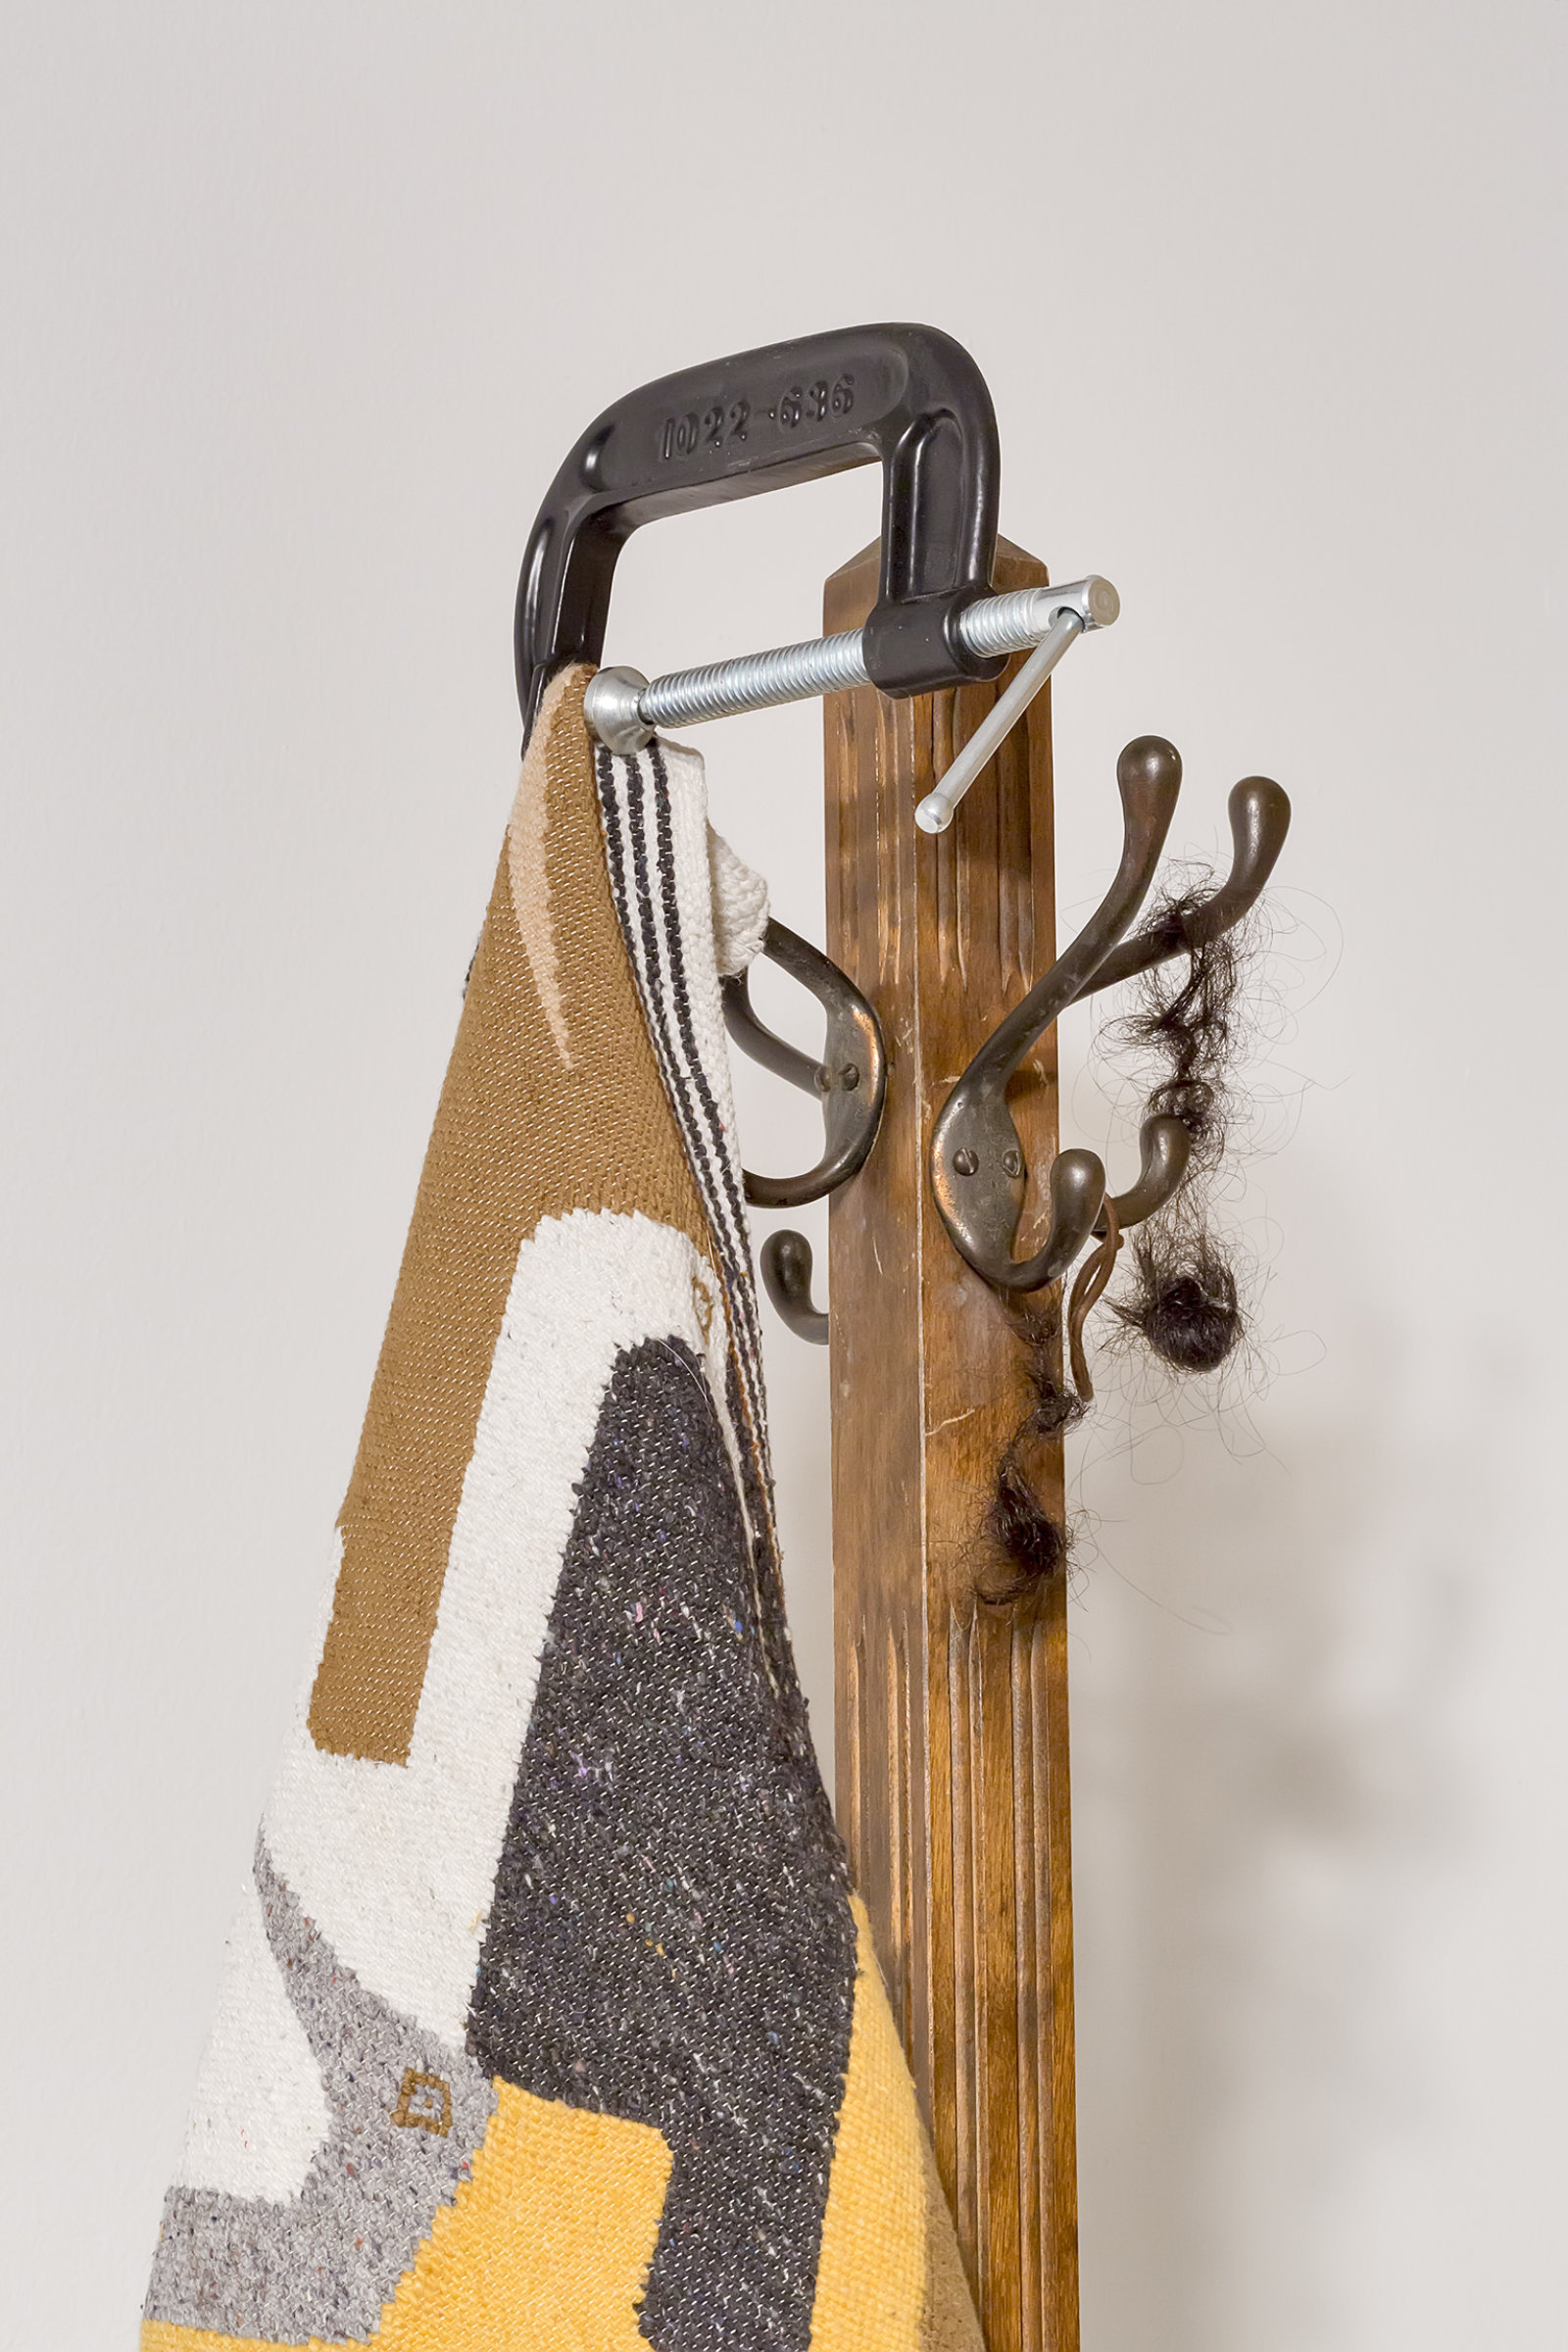 Duane Linklater, Flock (detail), 2016, wool tapestry, coathanger, steel vice, tarpaulin, gypsum, wood, steel, hair, clay, dimensions variable